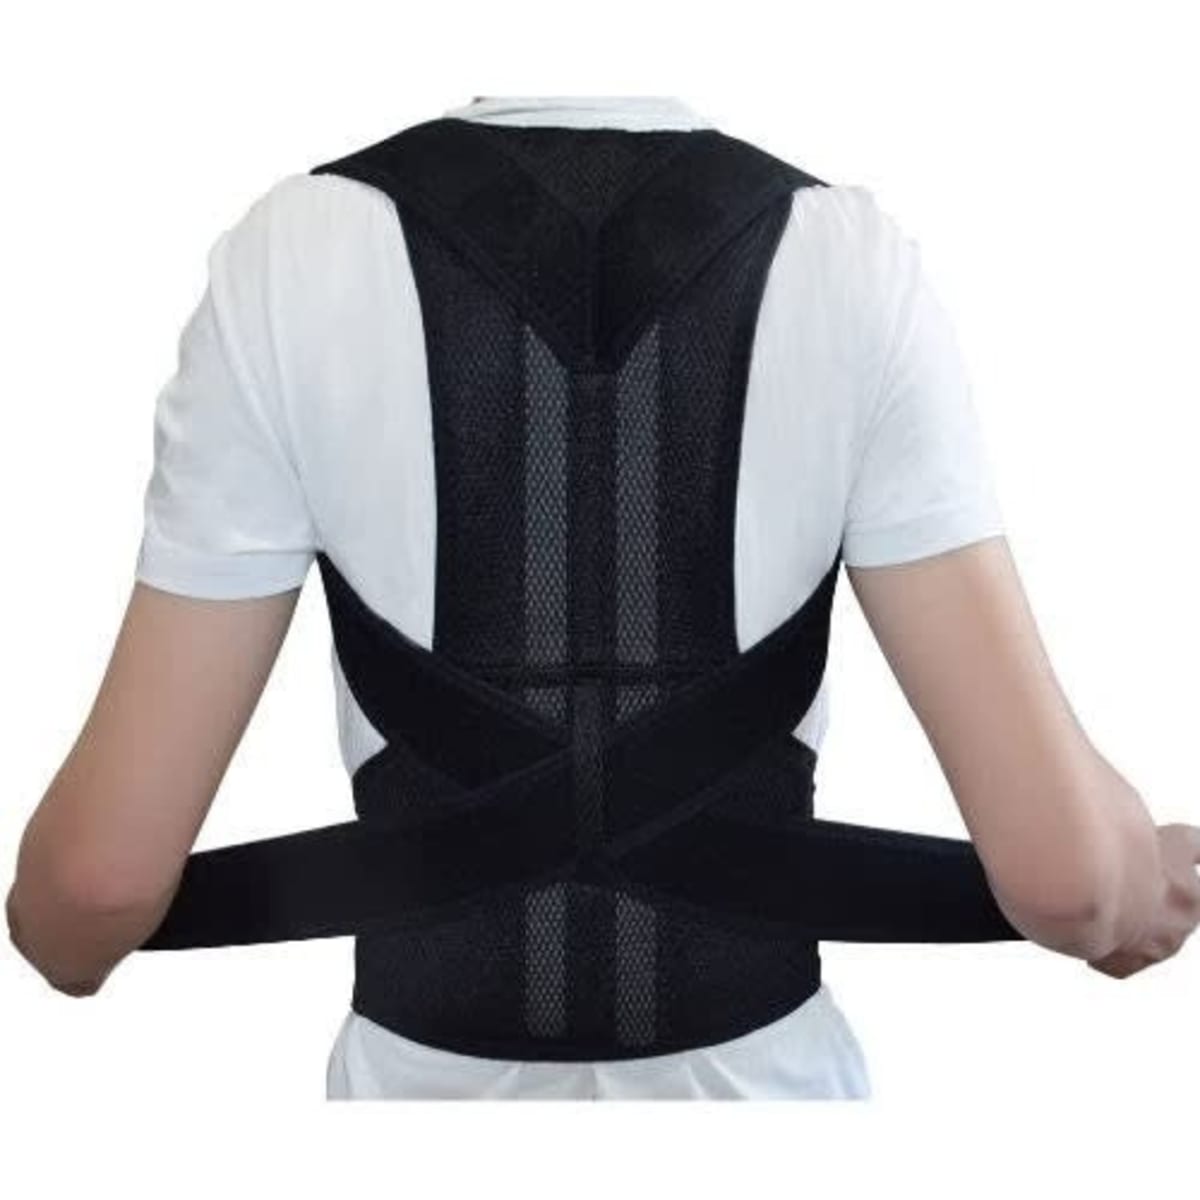 Adjustable Back Support Posture Corrector Belt